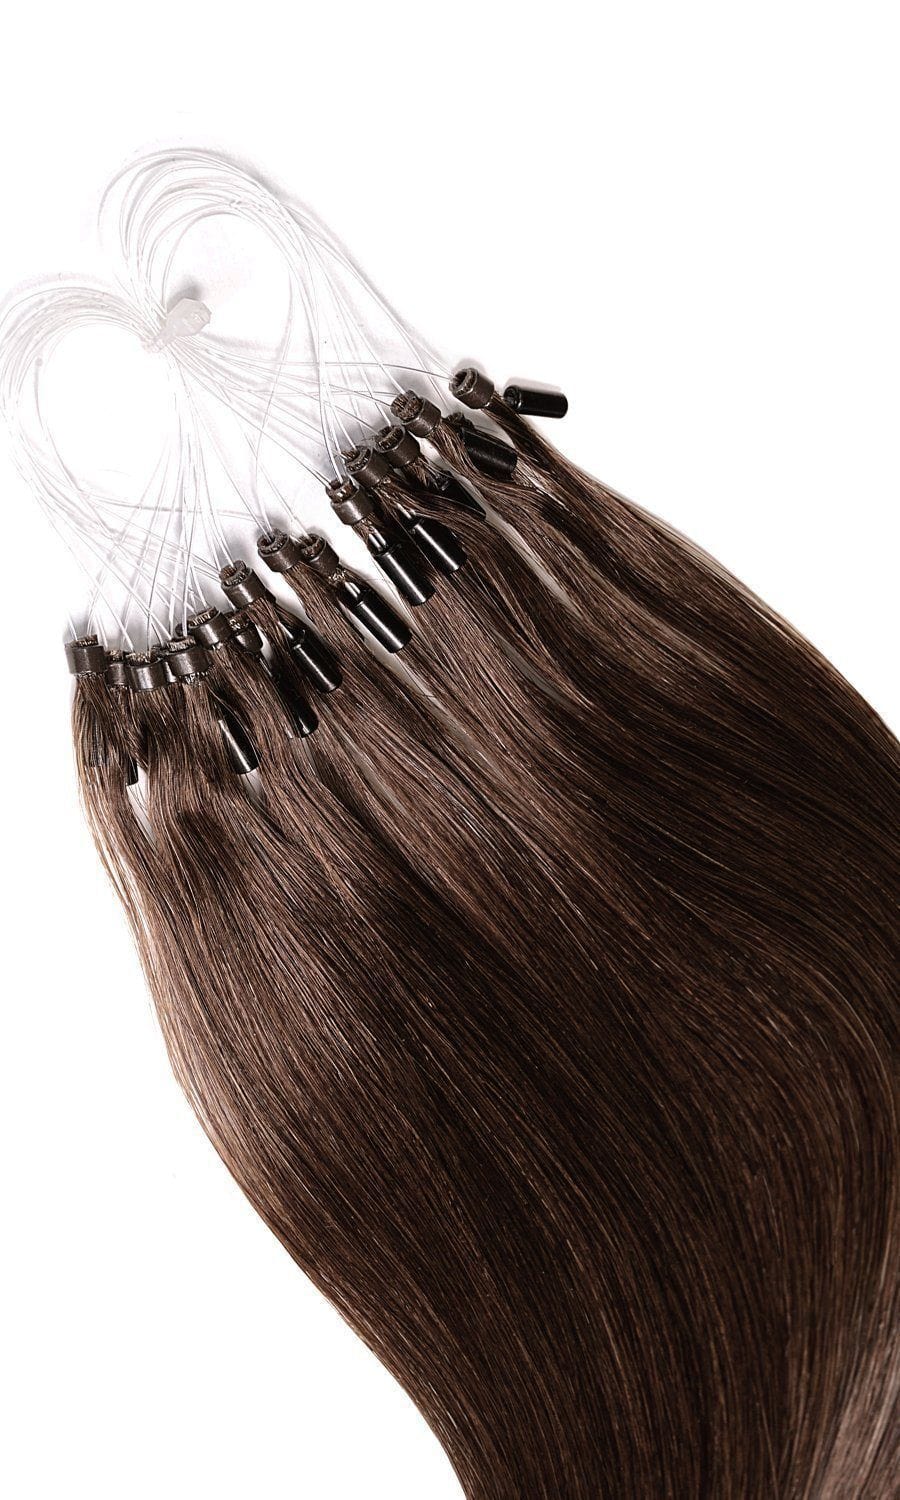 Microring Haarverlängerung - Kastanien-Dunkelbraun - 100% Echthaar